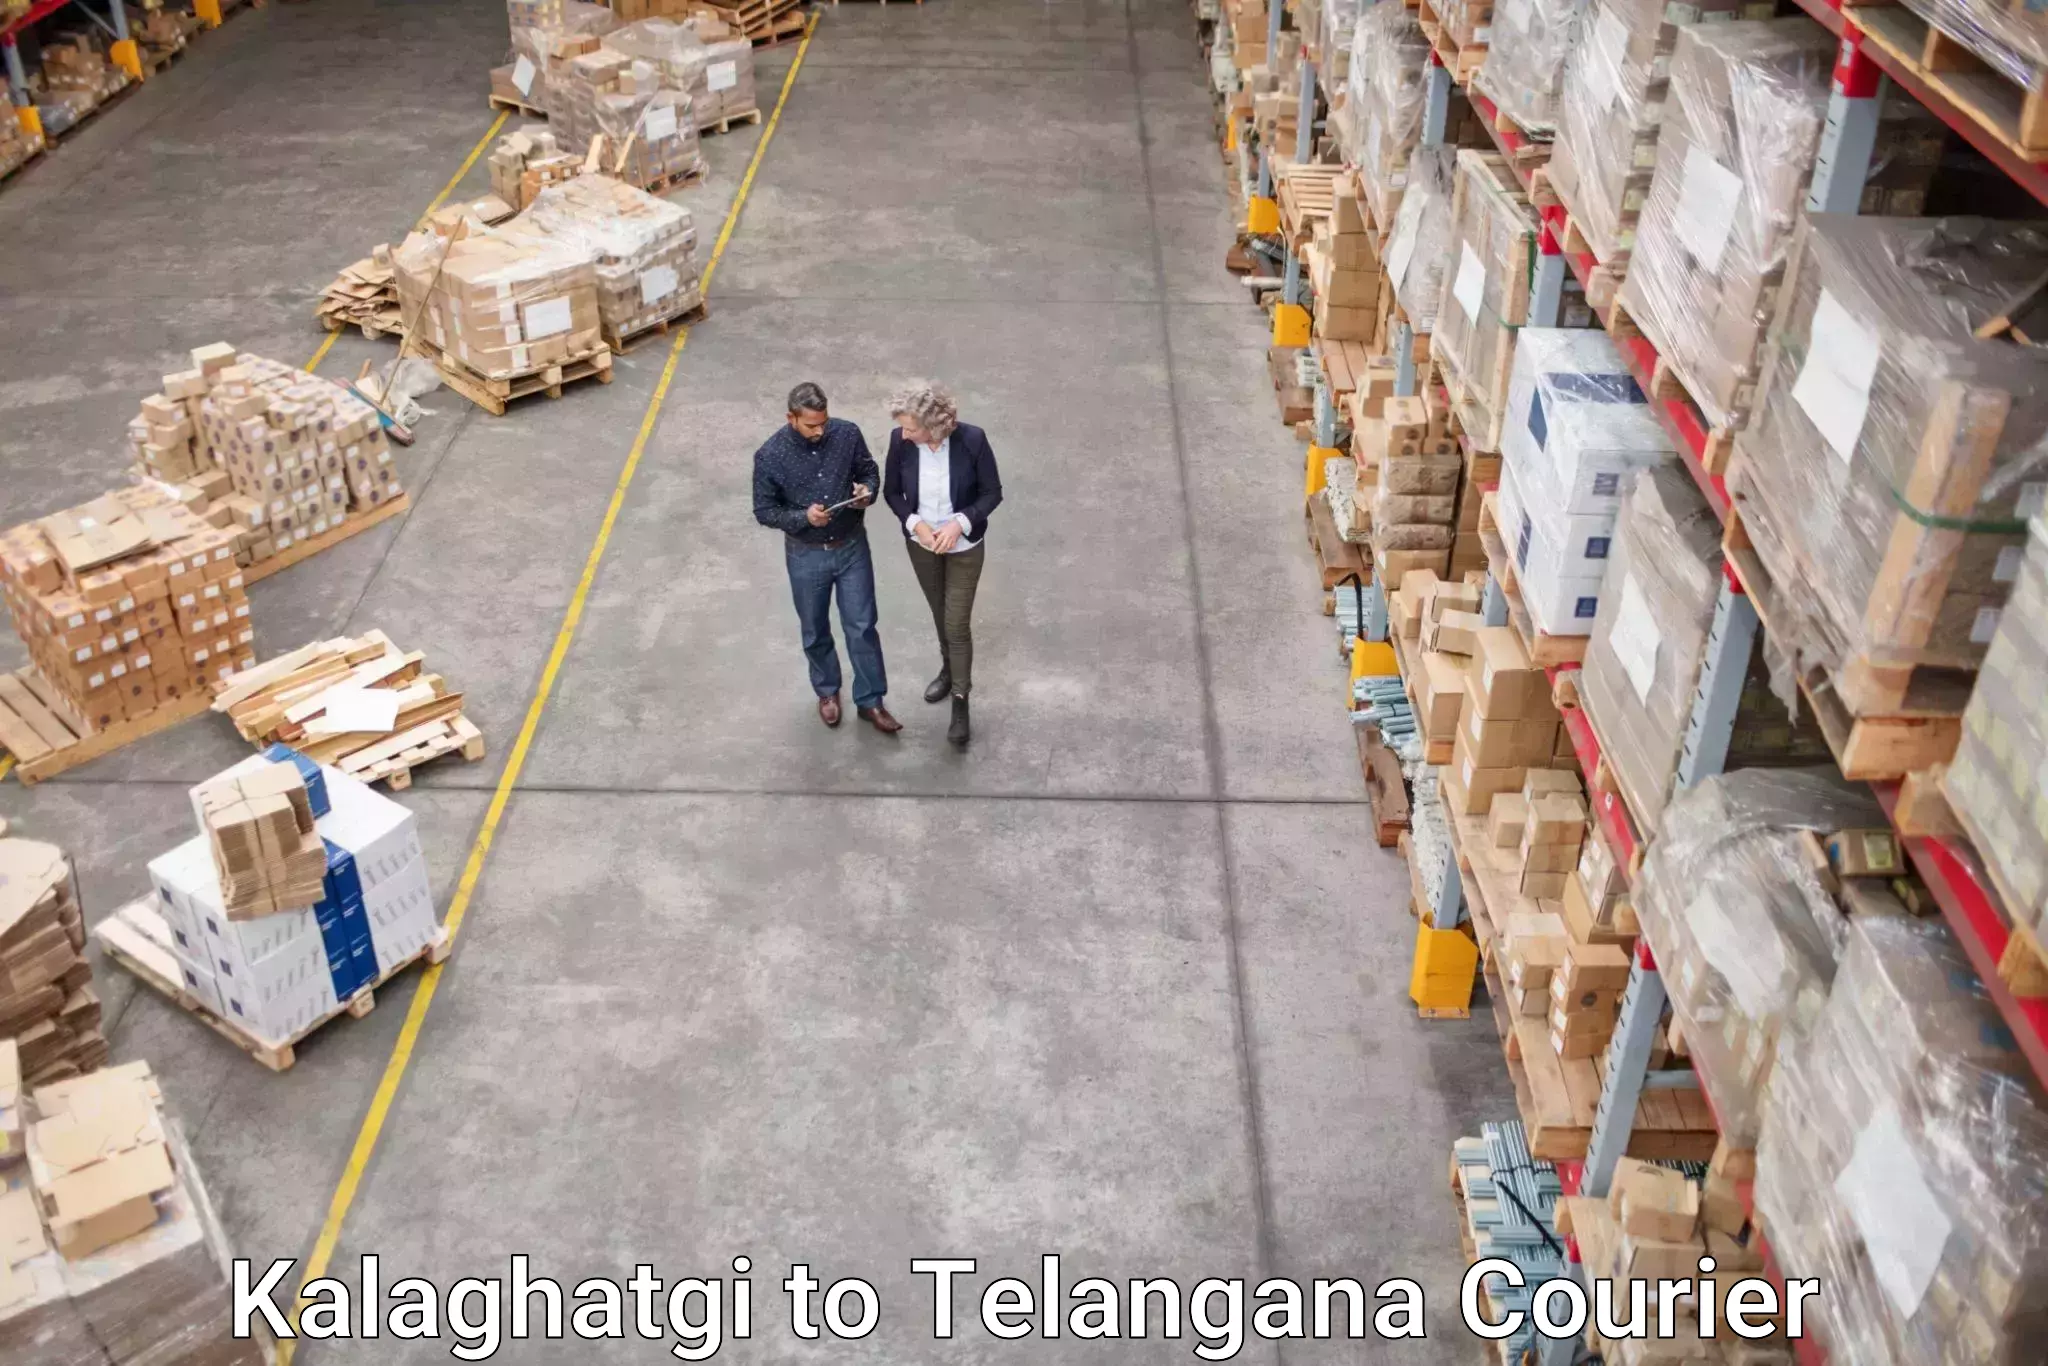 Reliable logistics providers Kalaghatgi to Mahabubnagar